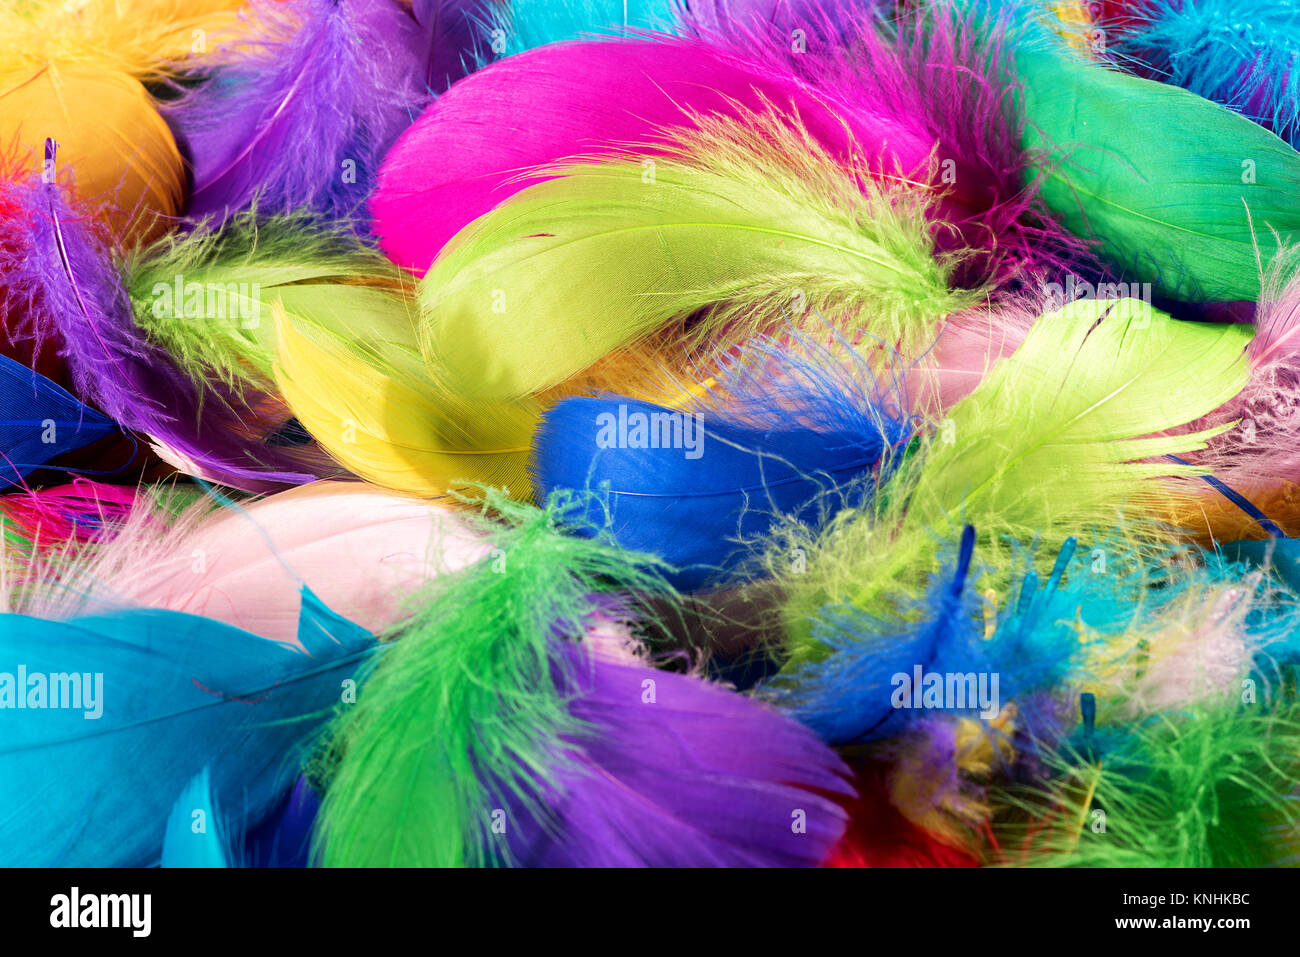 Hintergrund Textur von weichen, flauschigen bunt gefärbten Vogelfedern in leuchtenden Regenbogenfarben in der Nähe zu Full Frame anzeigen Stockfoto